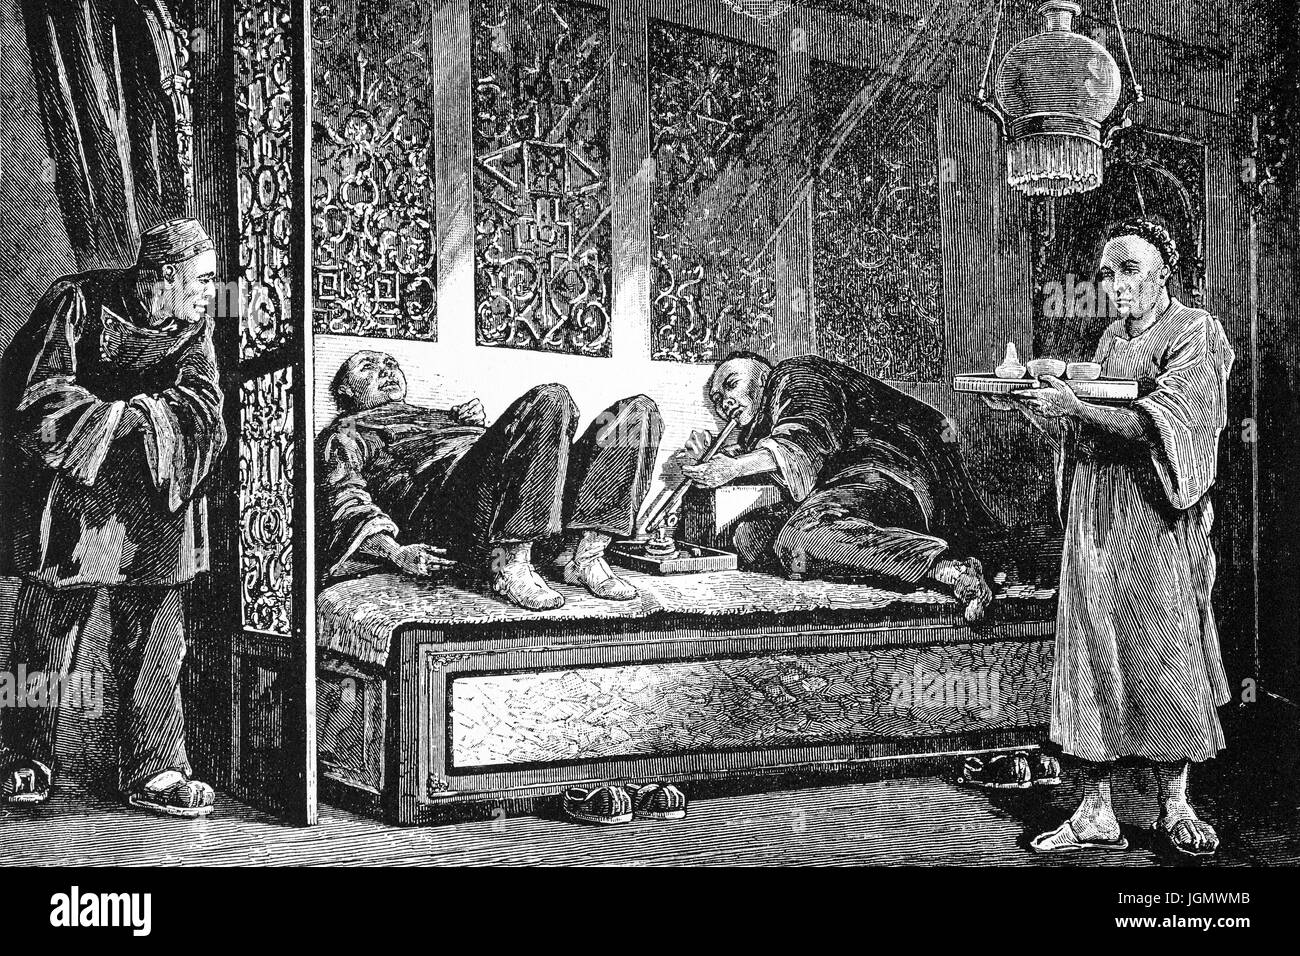 1879: Chinesische Opium Raucher in ein Opium-Palast oder Höhle, China Town, San Francisco, California, Vereinigte Staaten von Amerika Stockfoto